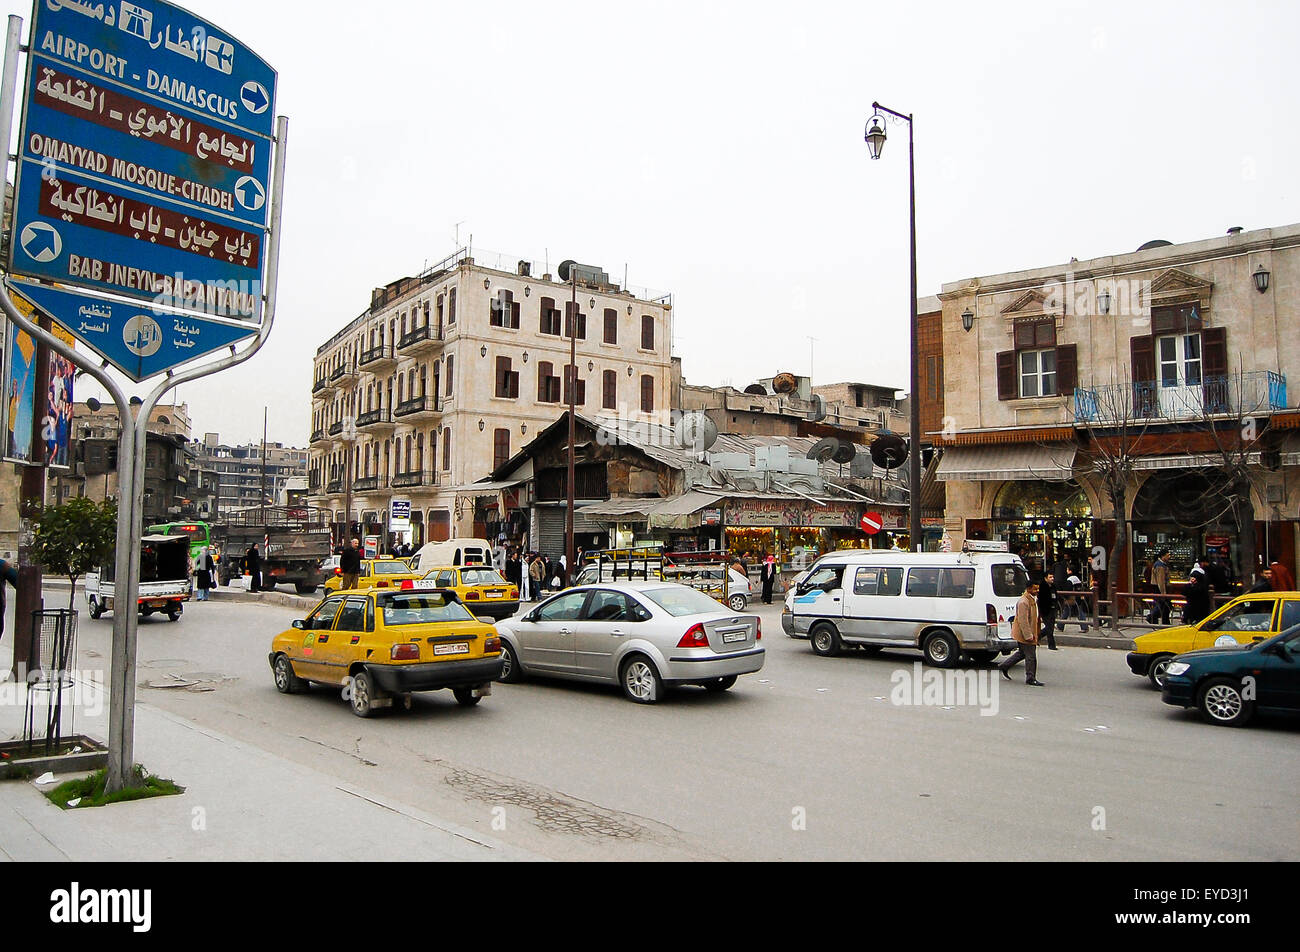 Le trafic quotidien de la ville d'Alep avant le déclenchement de la guerre civile - Syrie Banque D'Images